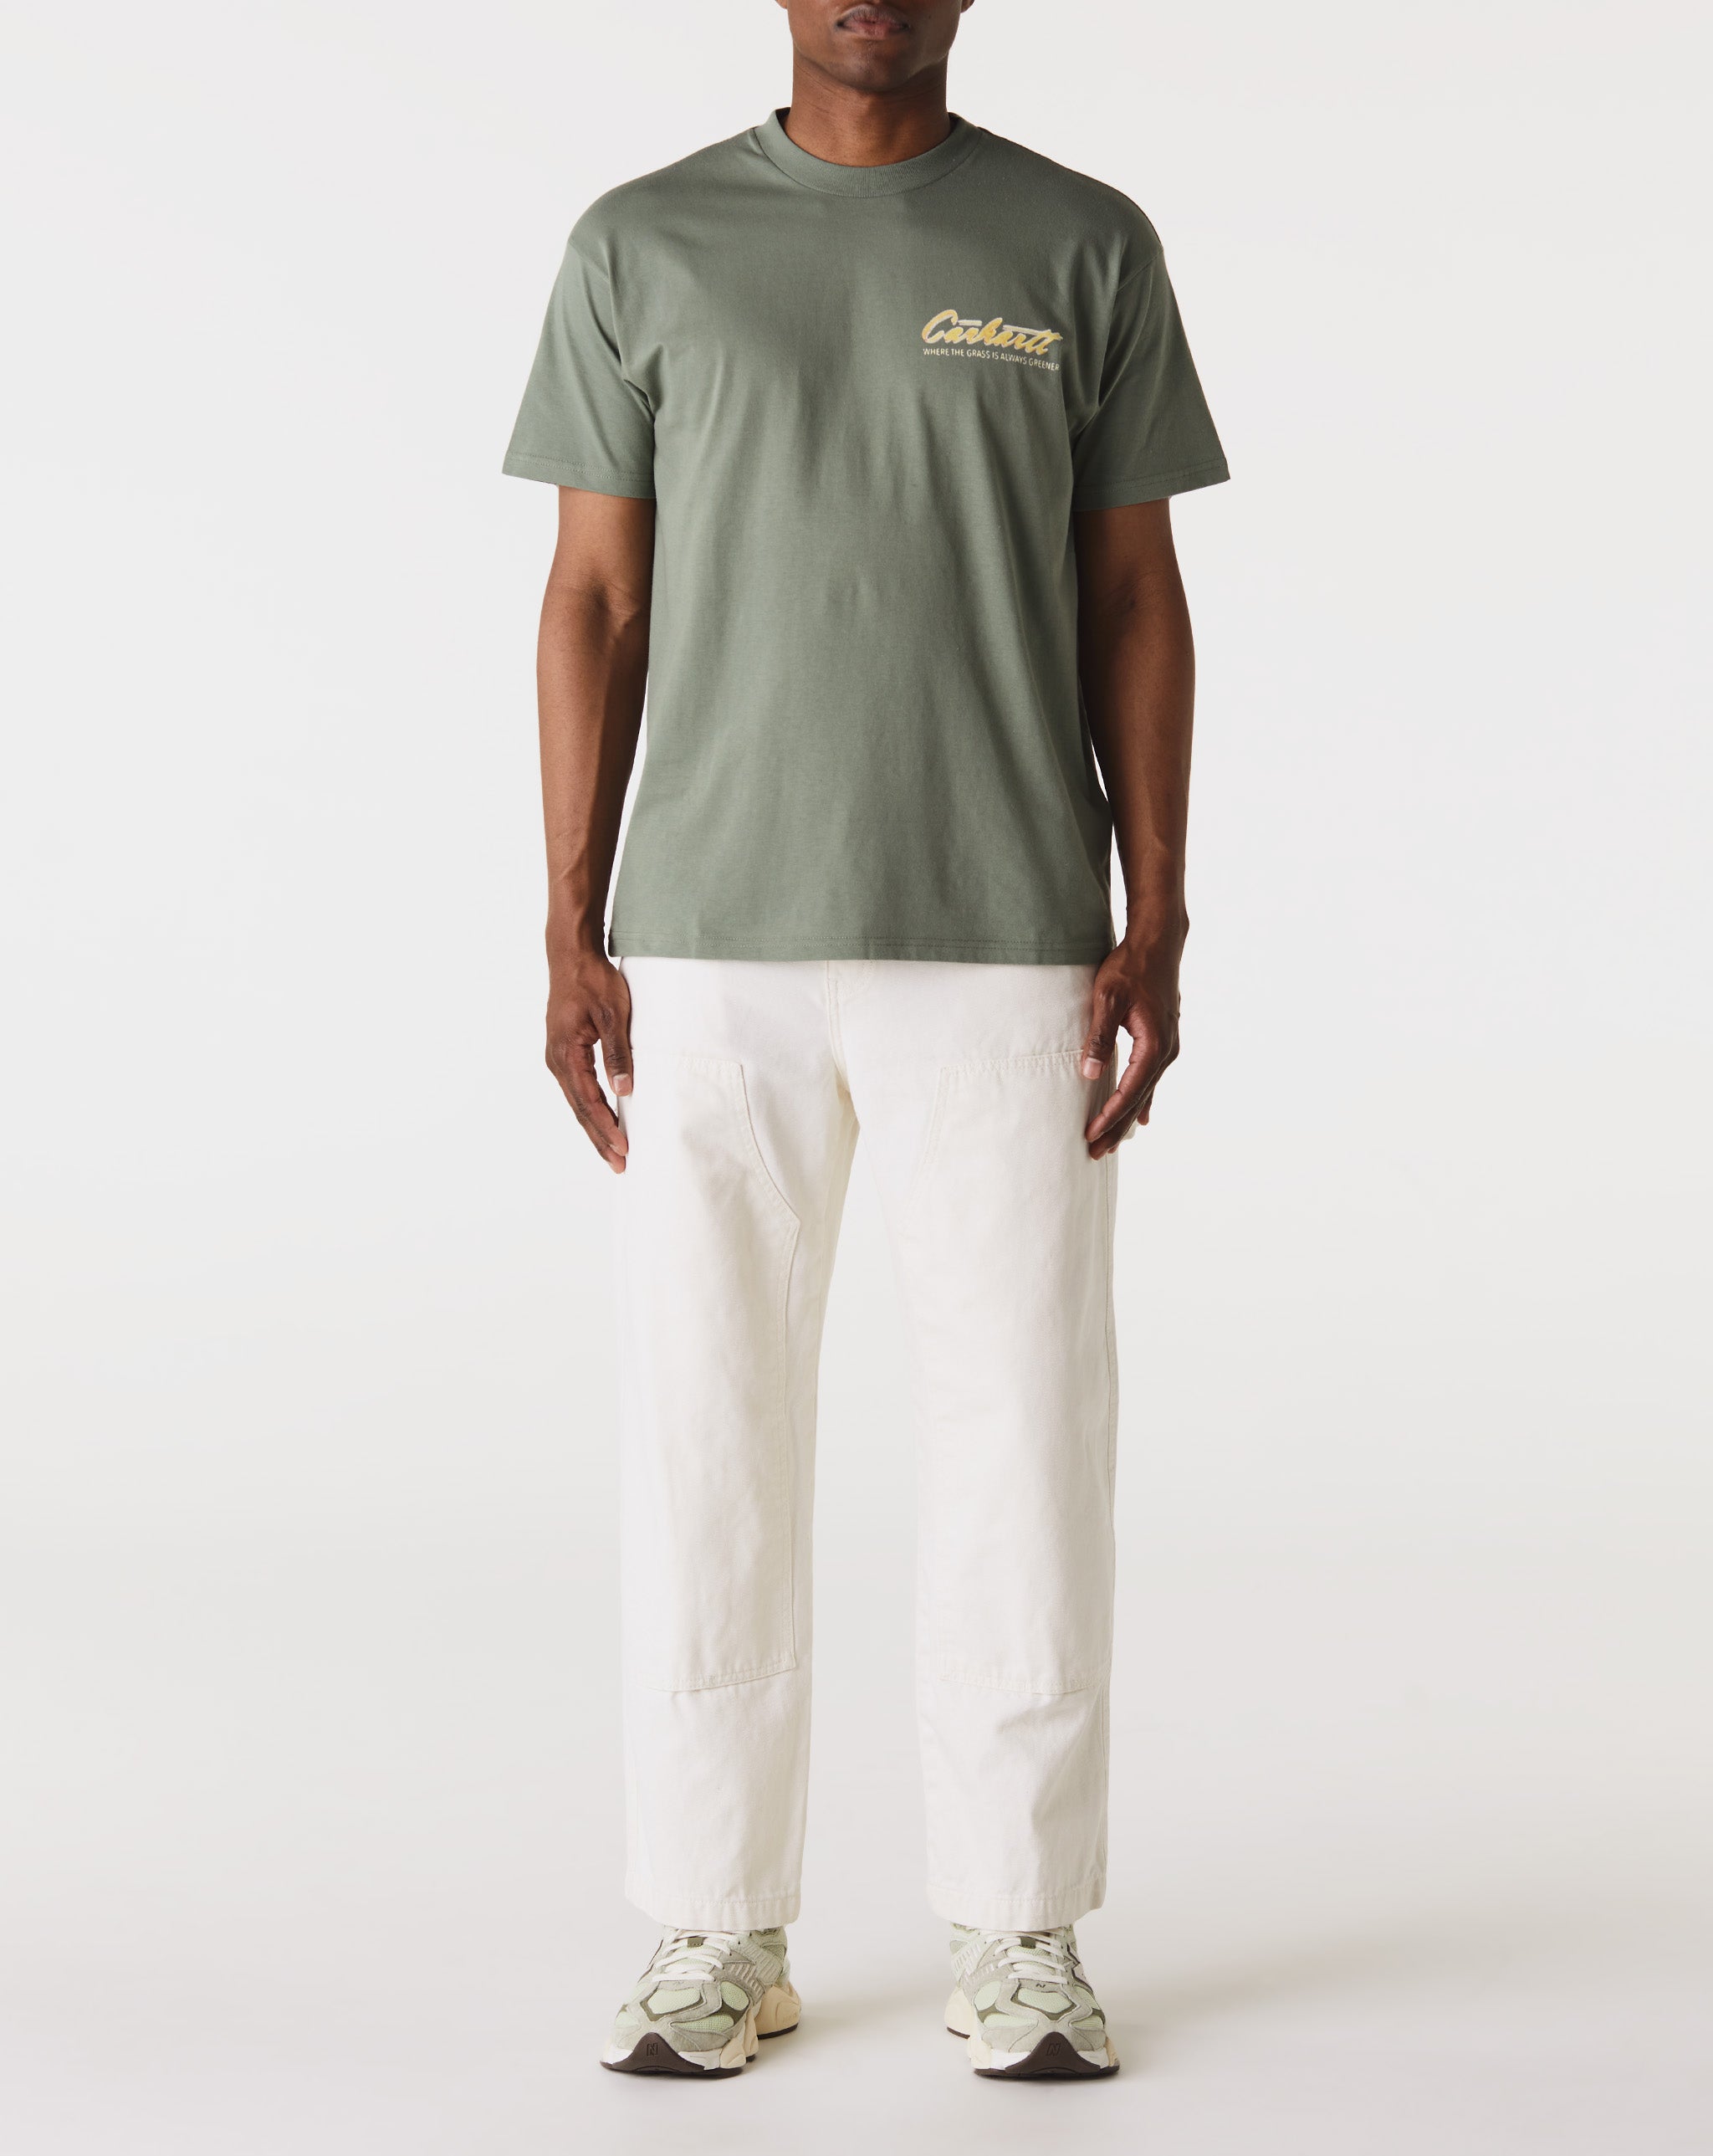 Carhartt WIP Green Grass T-Shirt - Rule of Next Apparel